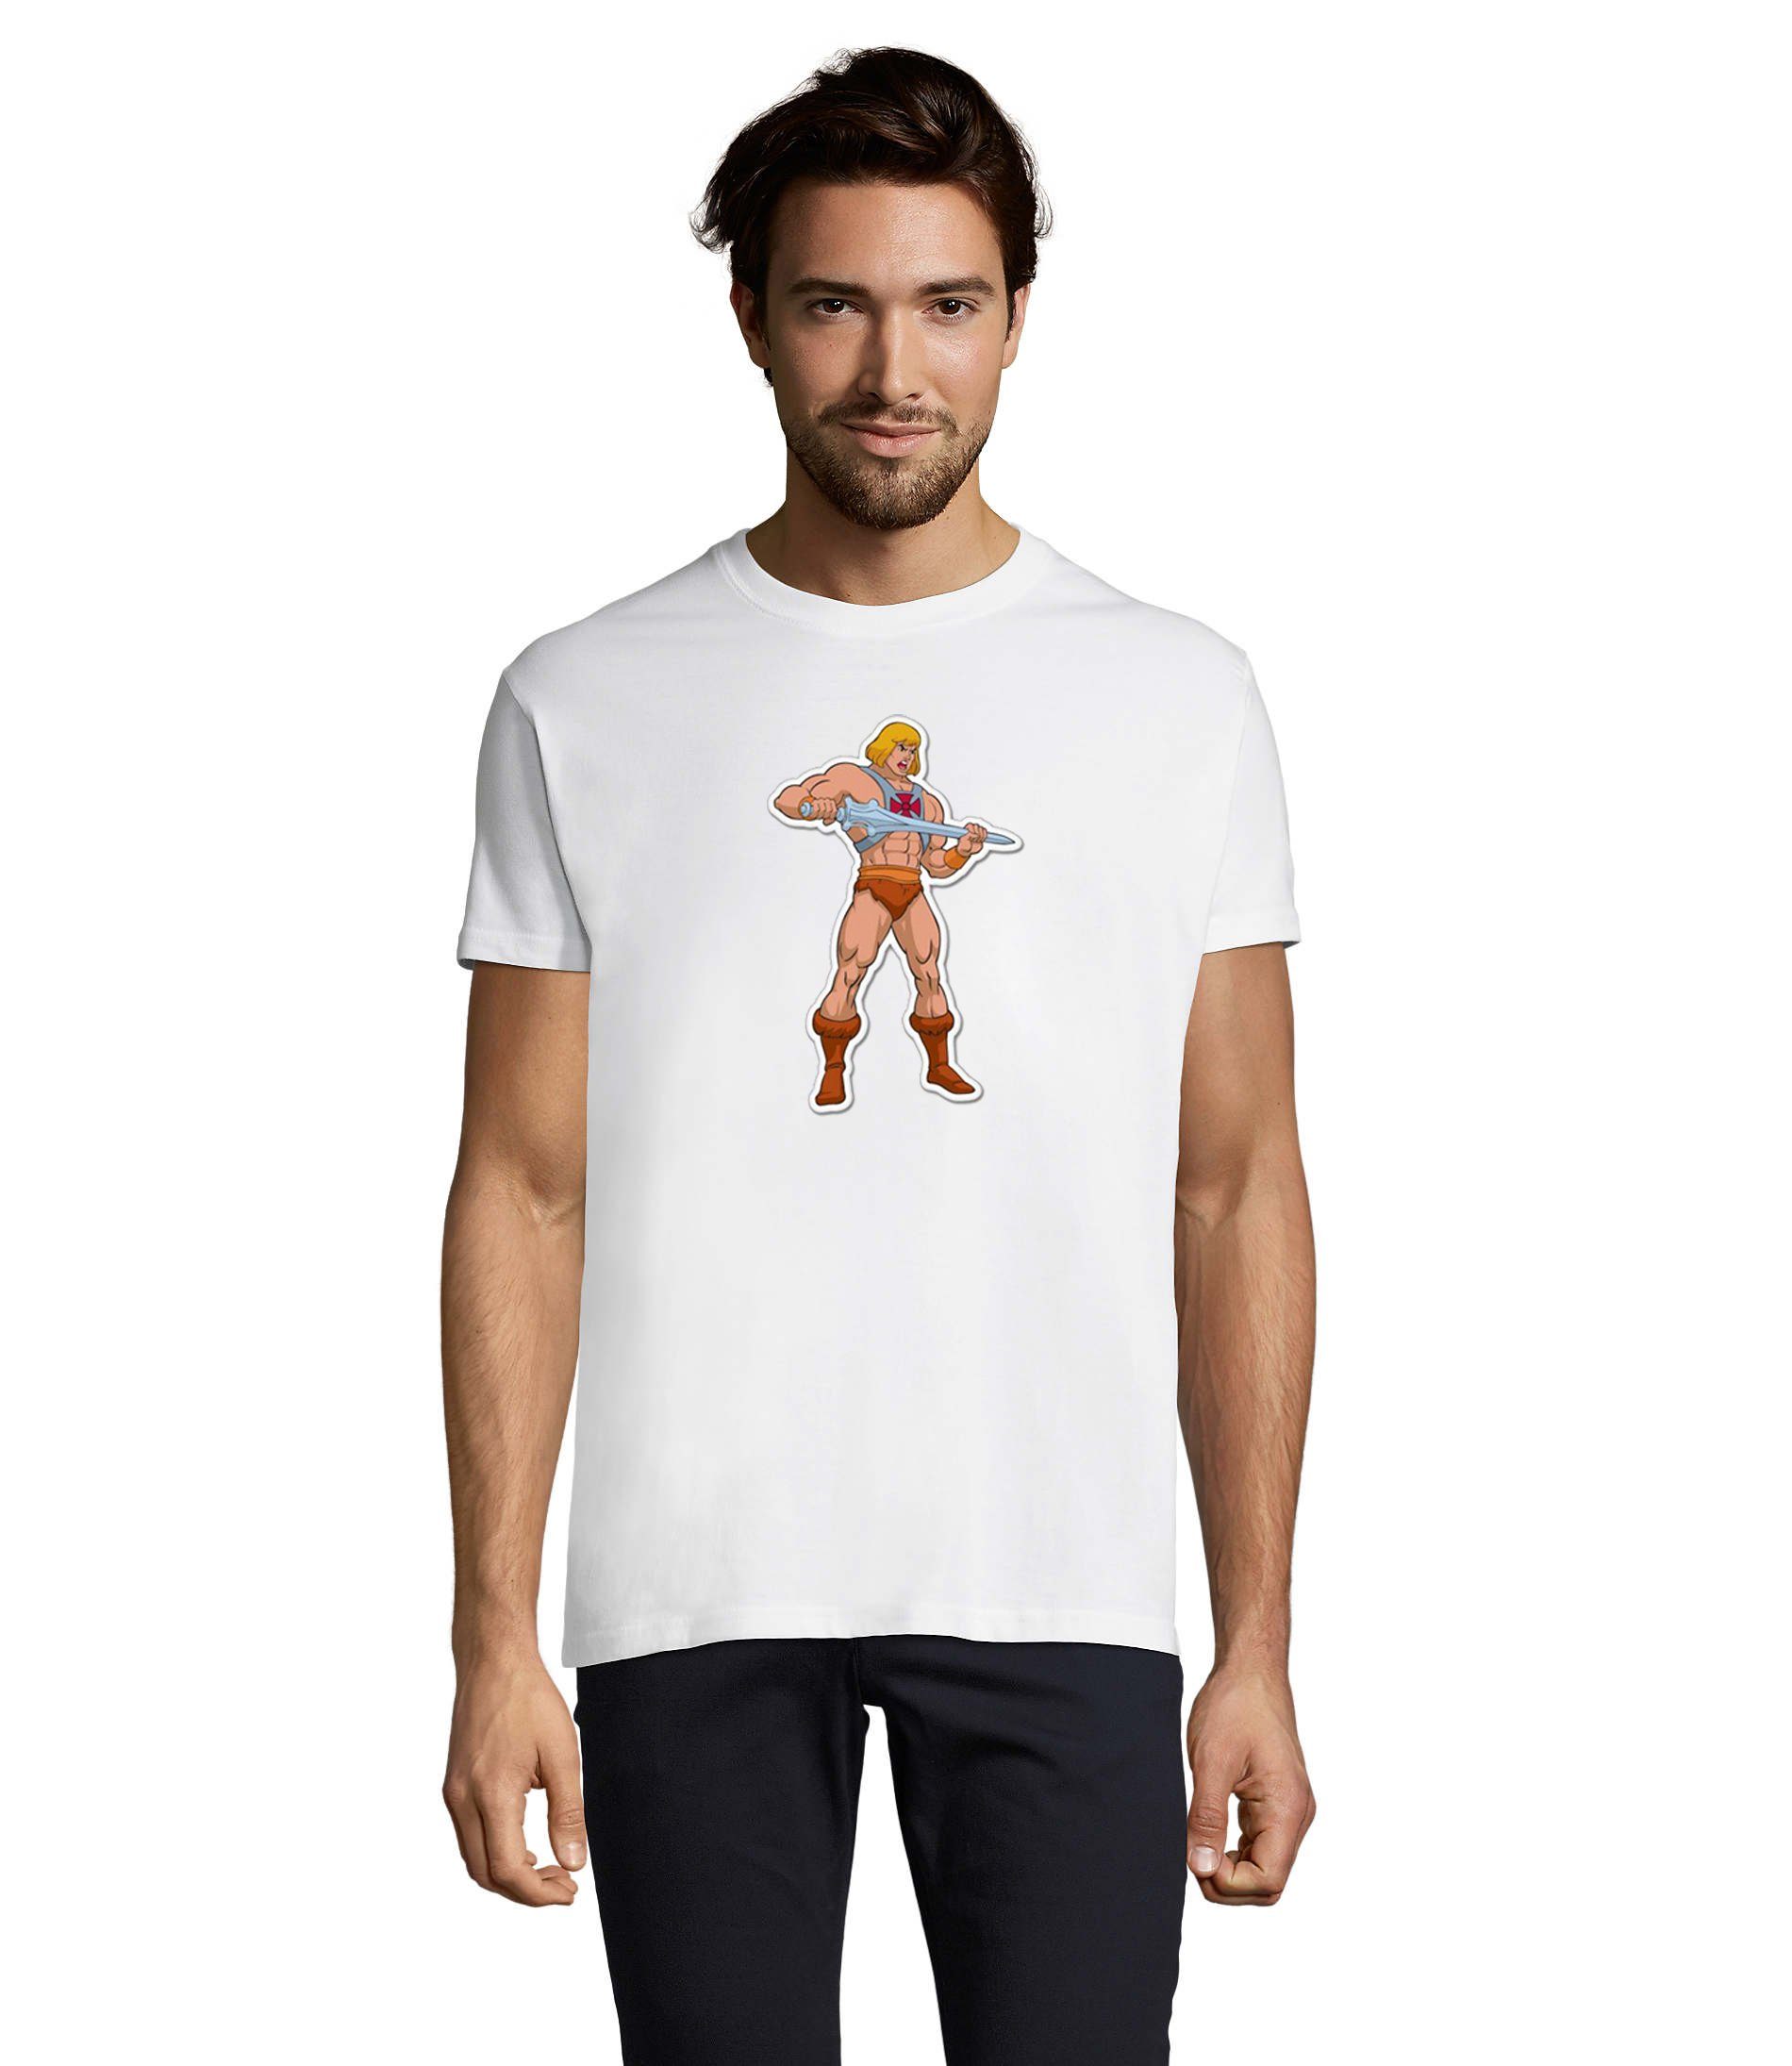 & Universe Blondie of The T-Shirt He-Man Brownie Masters Weiß Herren MotU